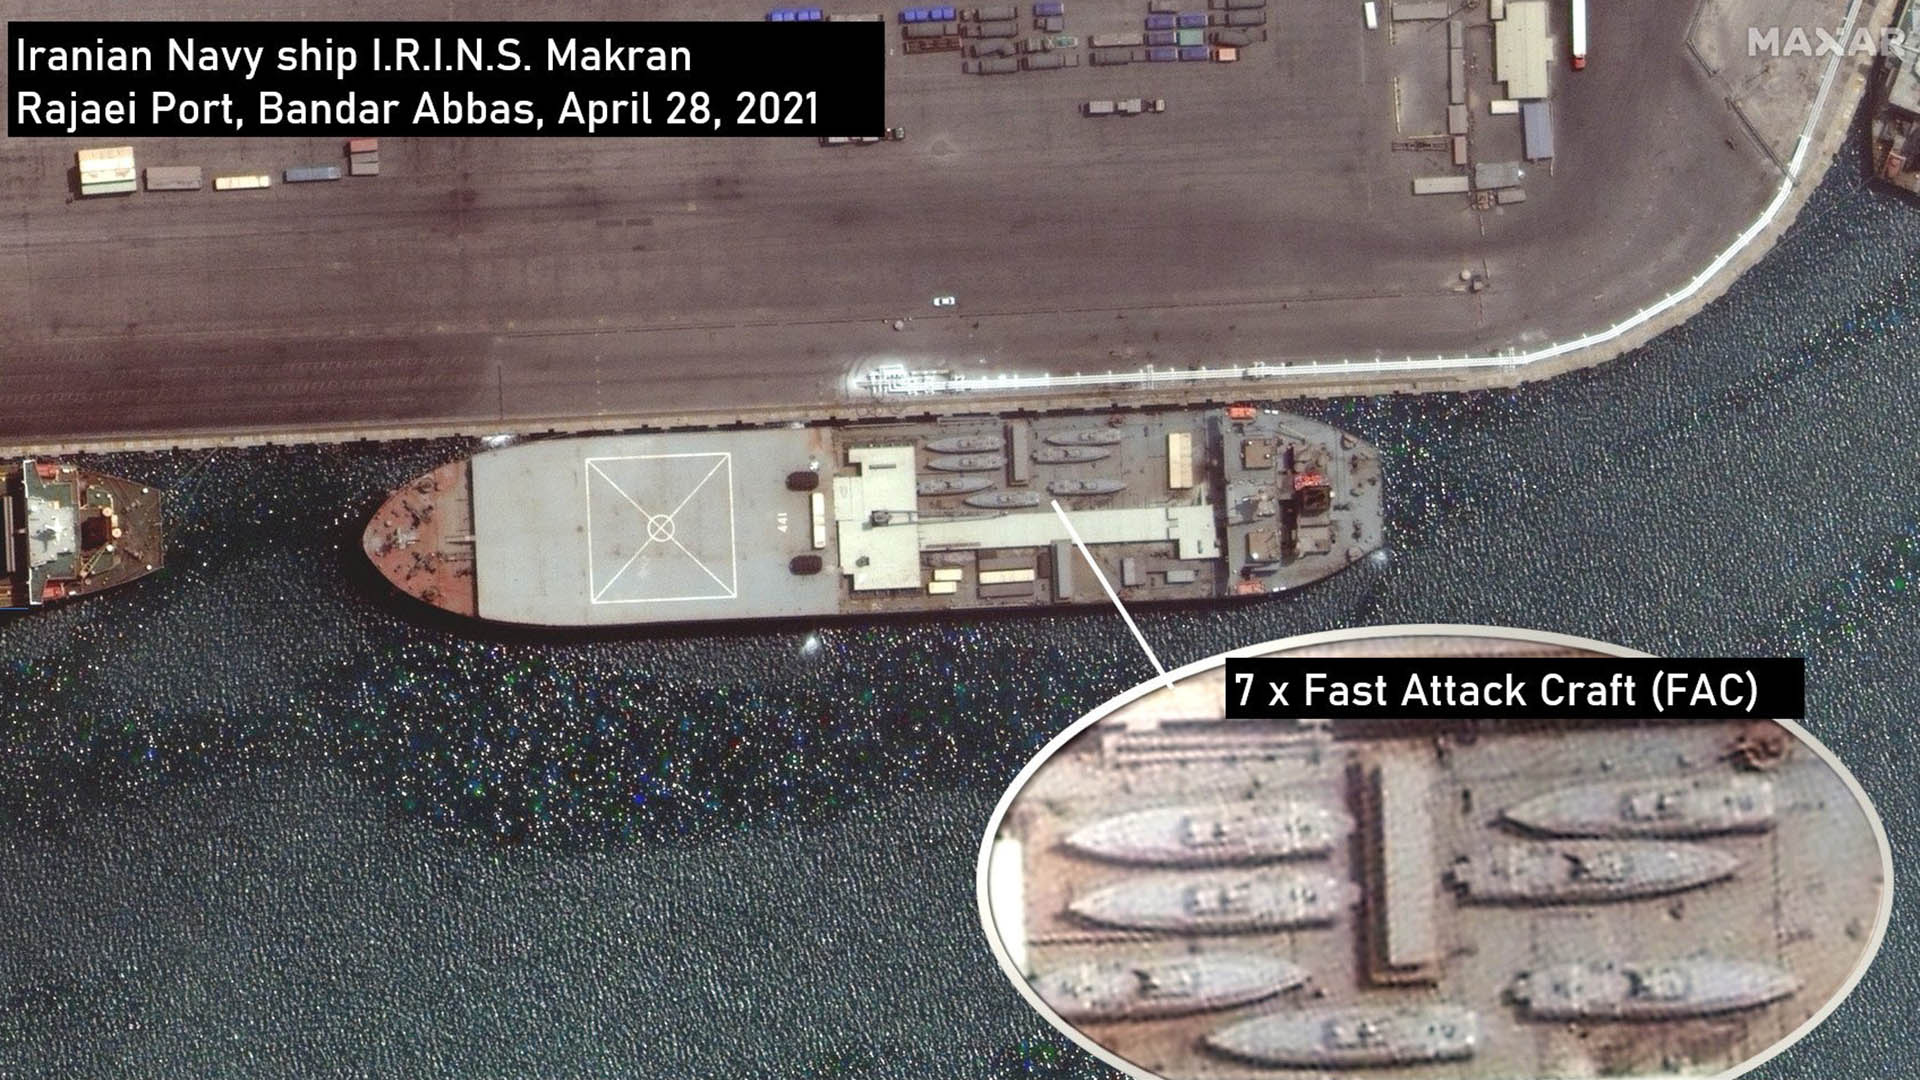 Imágenes satelitales muestran un carguero iraní llevando lanchas de asalto que podrían tener como destino final Venezuela